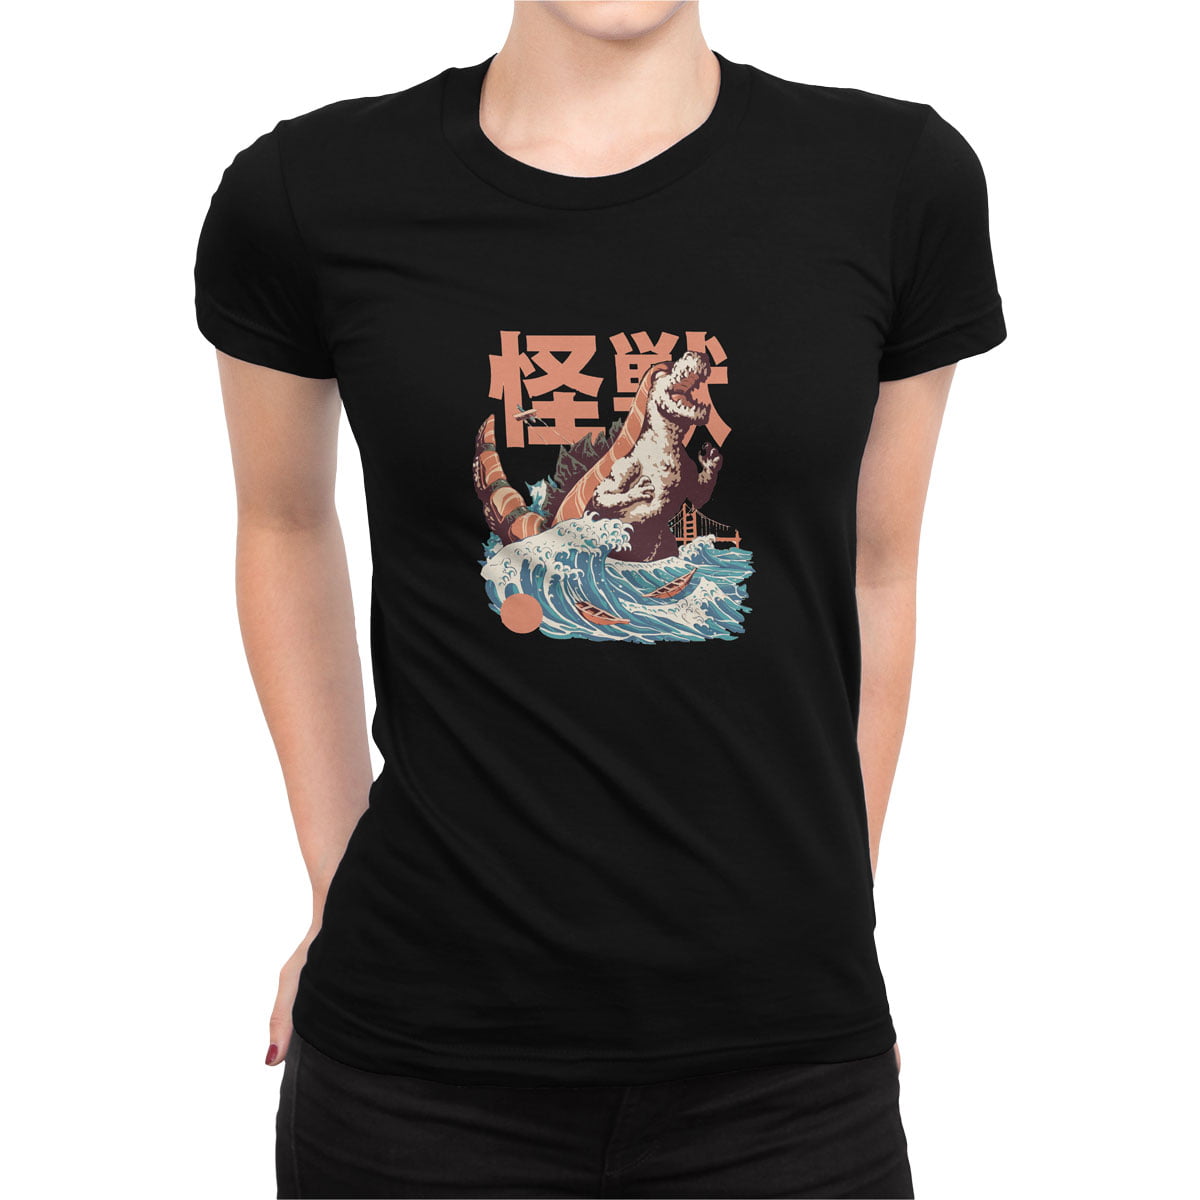 Godzilla kadin tisort s - japanese godzilla sushi kadın t-shirt - figurex